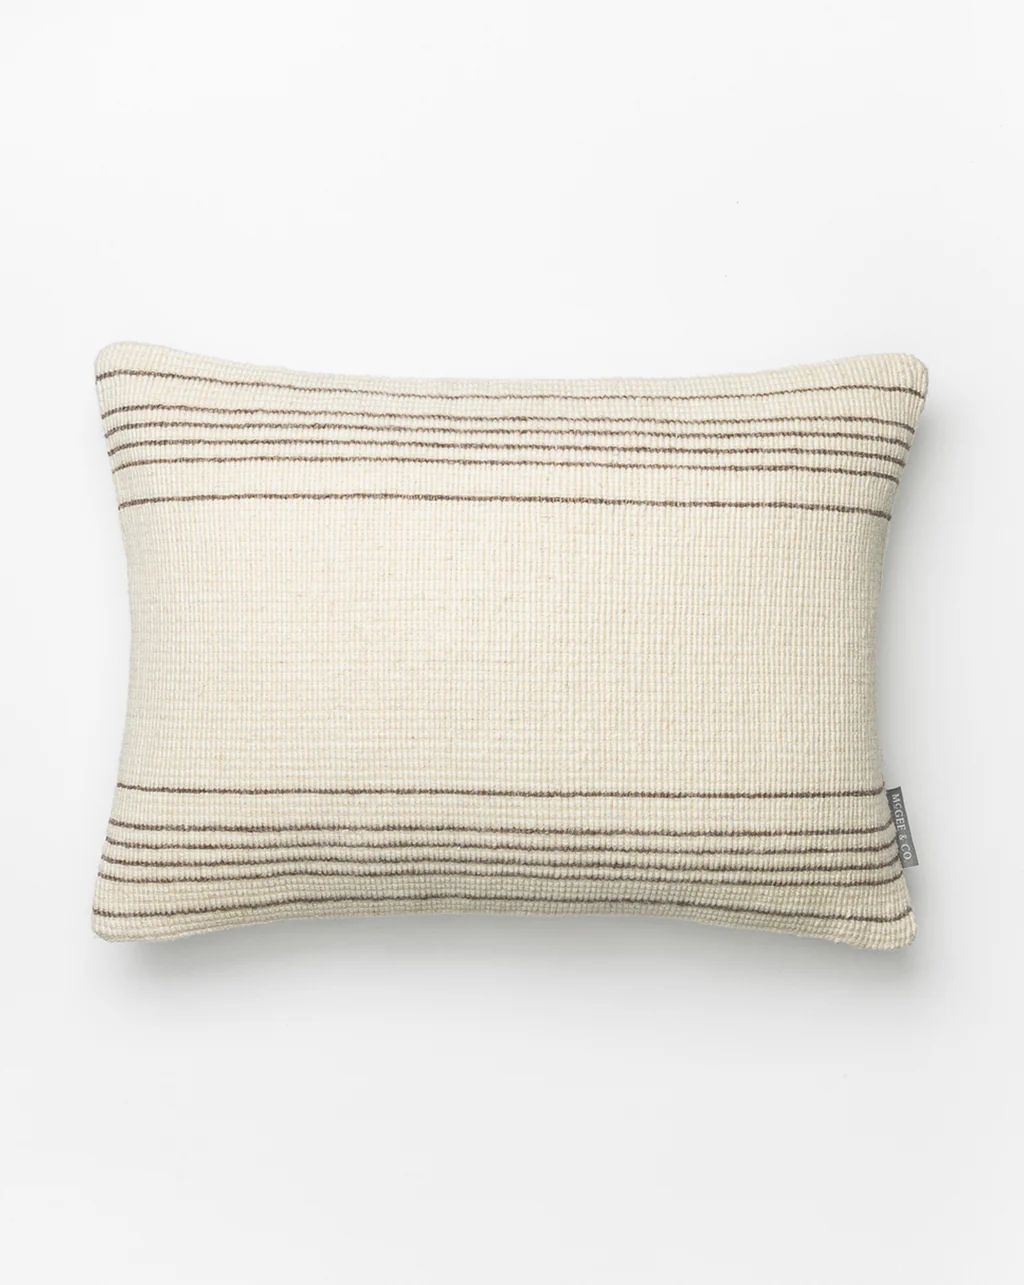 Caspian Woven Pillow Cover | McGee & Co.